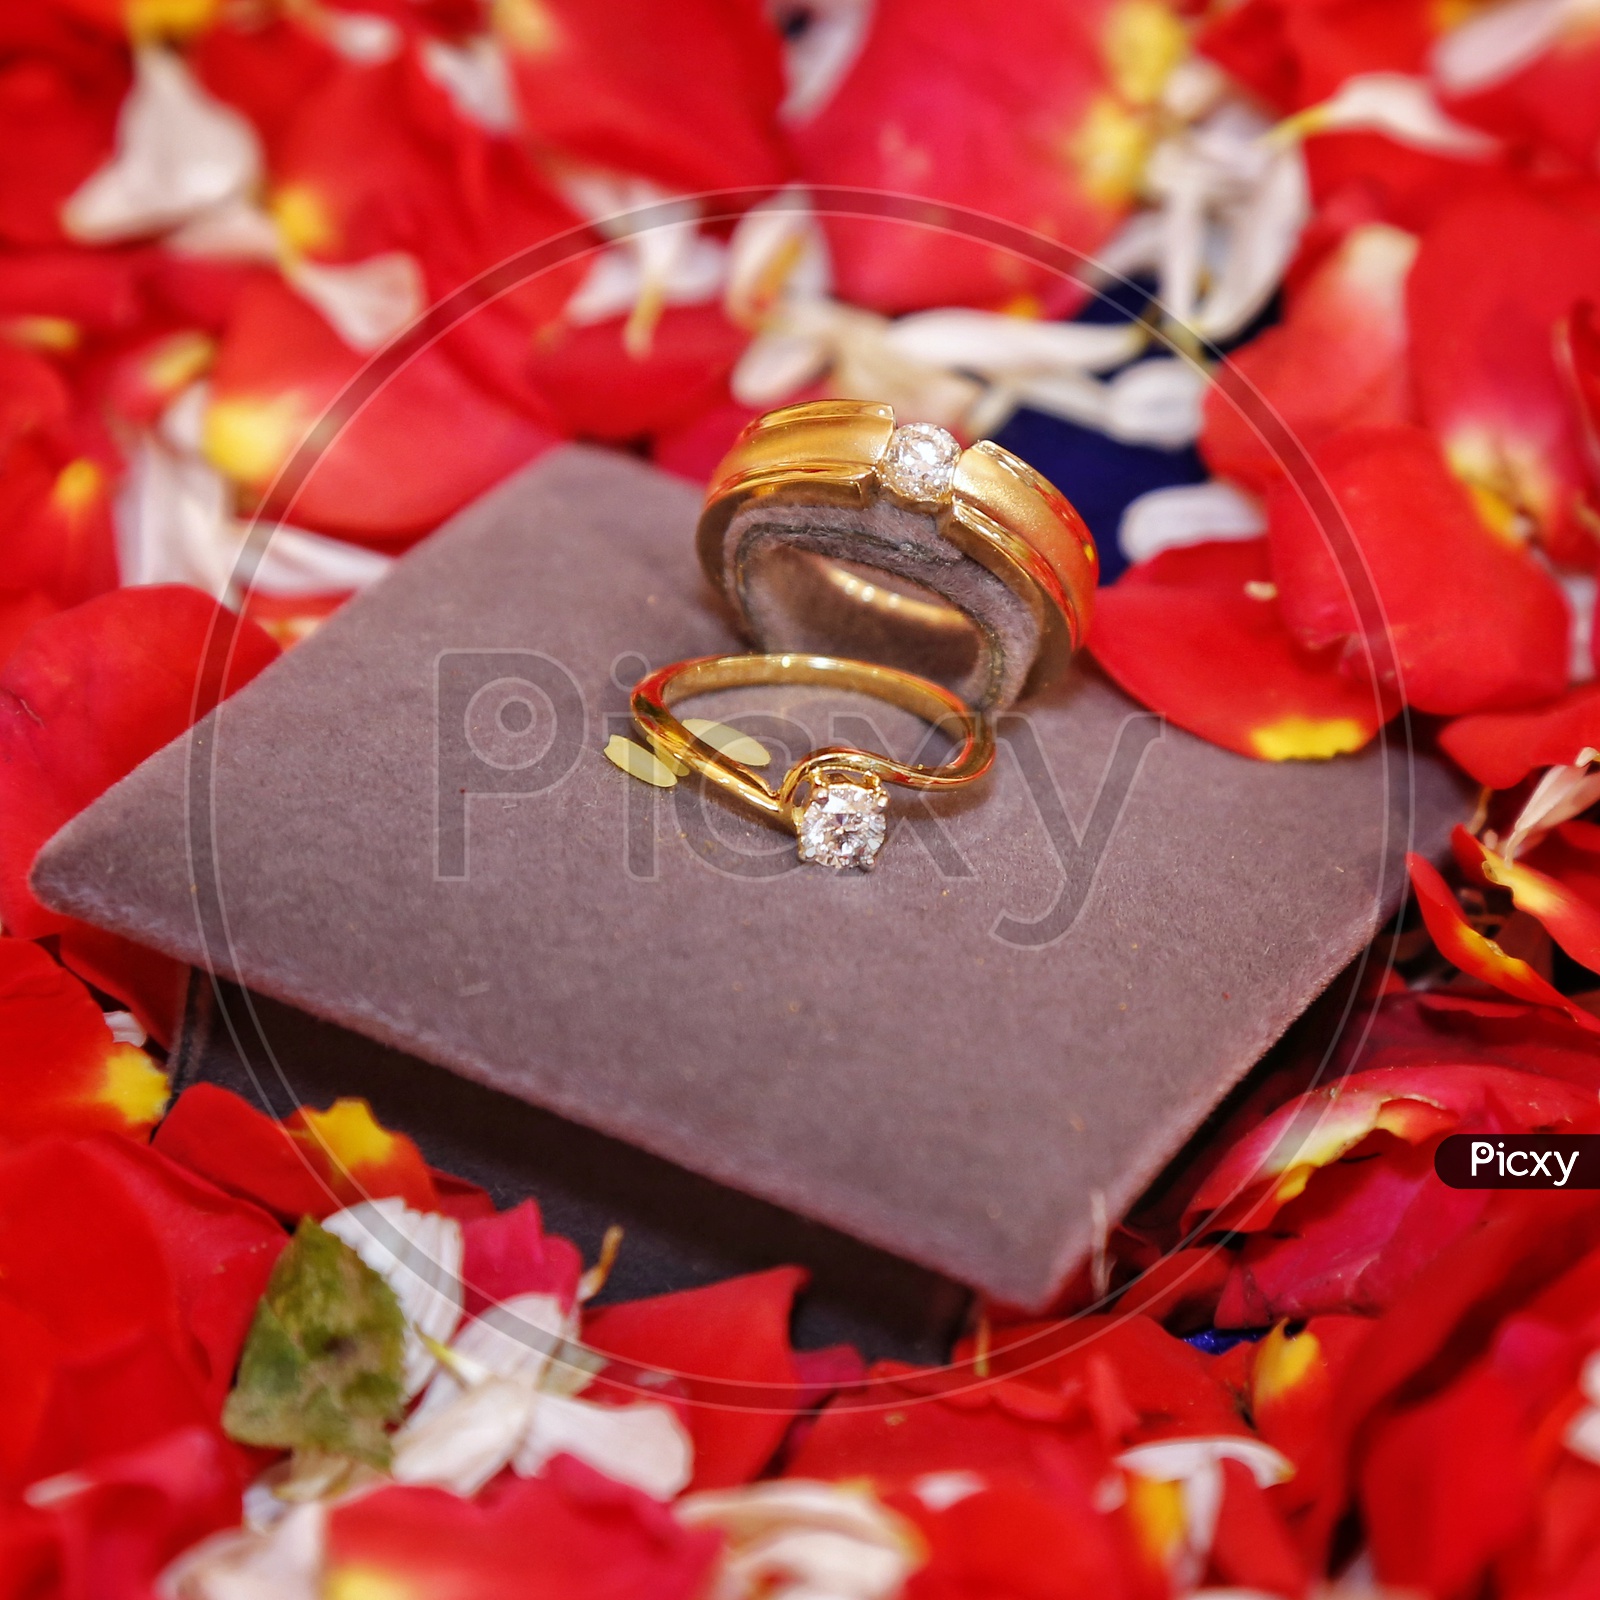 Ring Ceremony | Jyoti Weds Amit